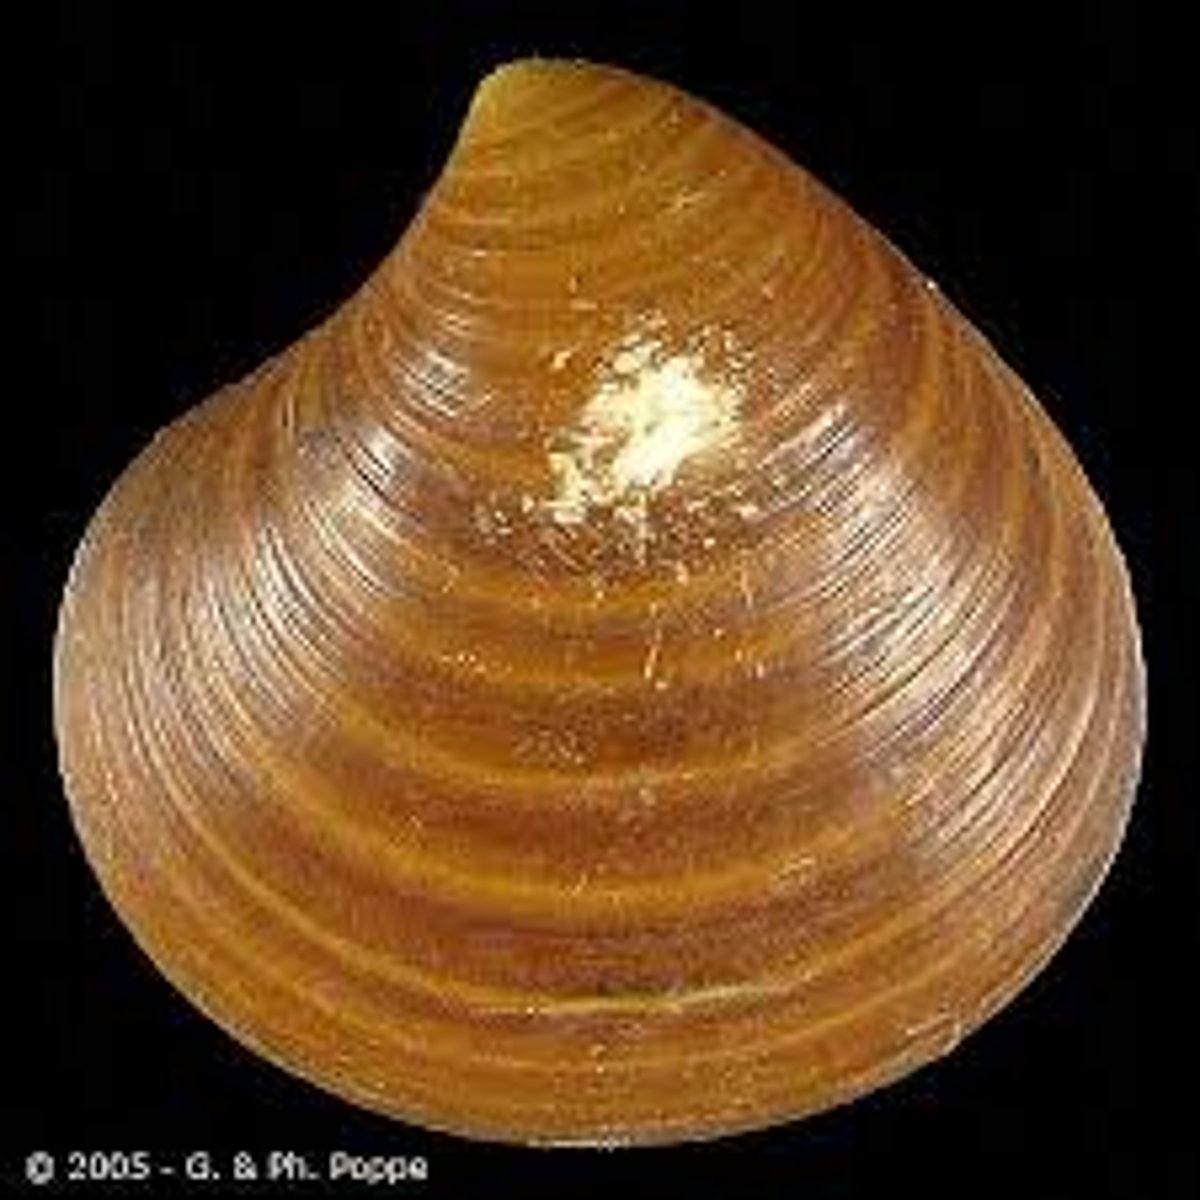 <p>Bivalve mollusk genus</p>